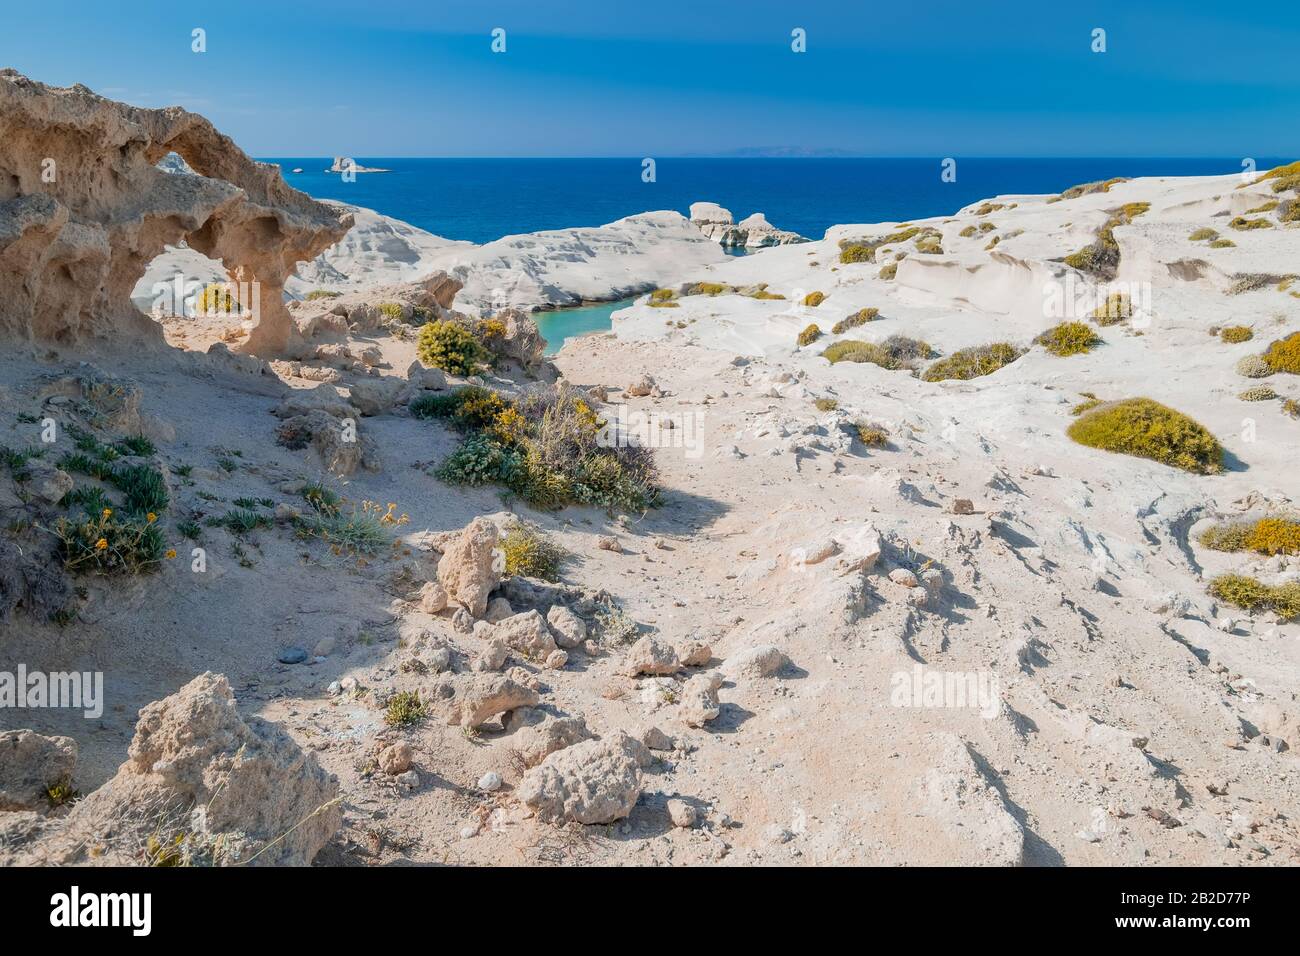 Incredibile paesaggio con rocce vulcaniche bianche sulla spiaggia di Sarakiniko. Turchese Mar Egeo e blu cielo soleggiato. Natura mediterranea unica dell'isola di Milos, Foto Stock